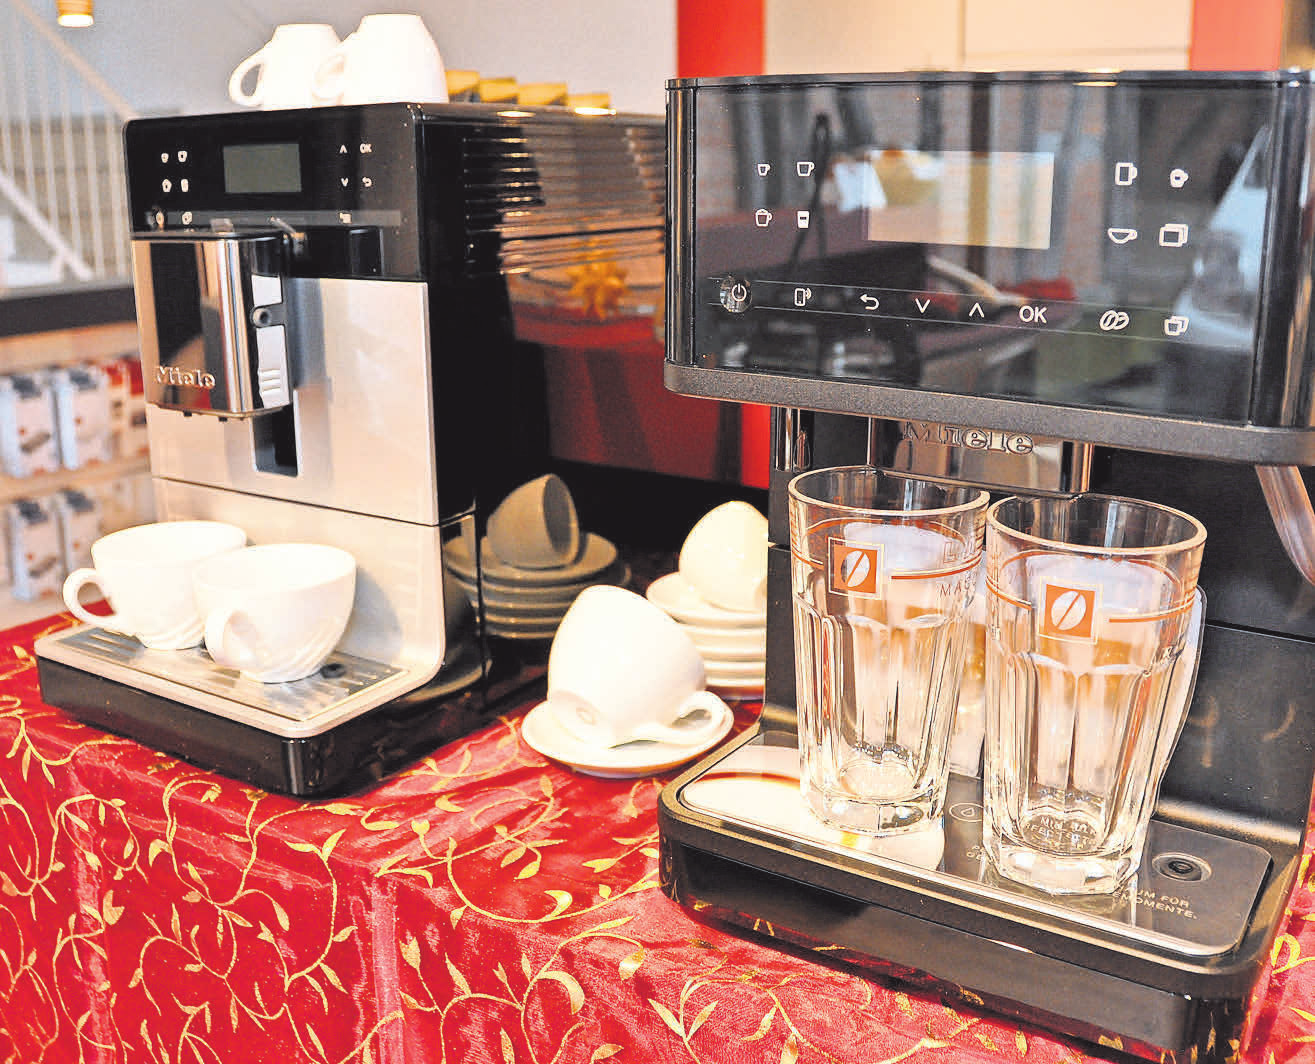 Miele-Haushalts- und Elektrogeräte, so wie hier moderne Kaffeeautomaten, bestimmen das Bild in der Ausstellung.